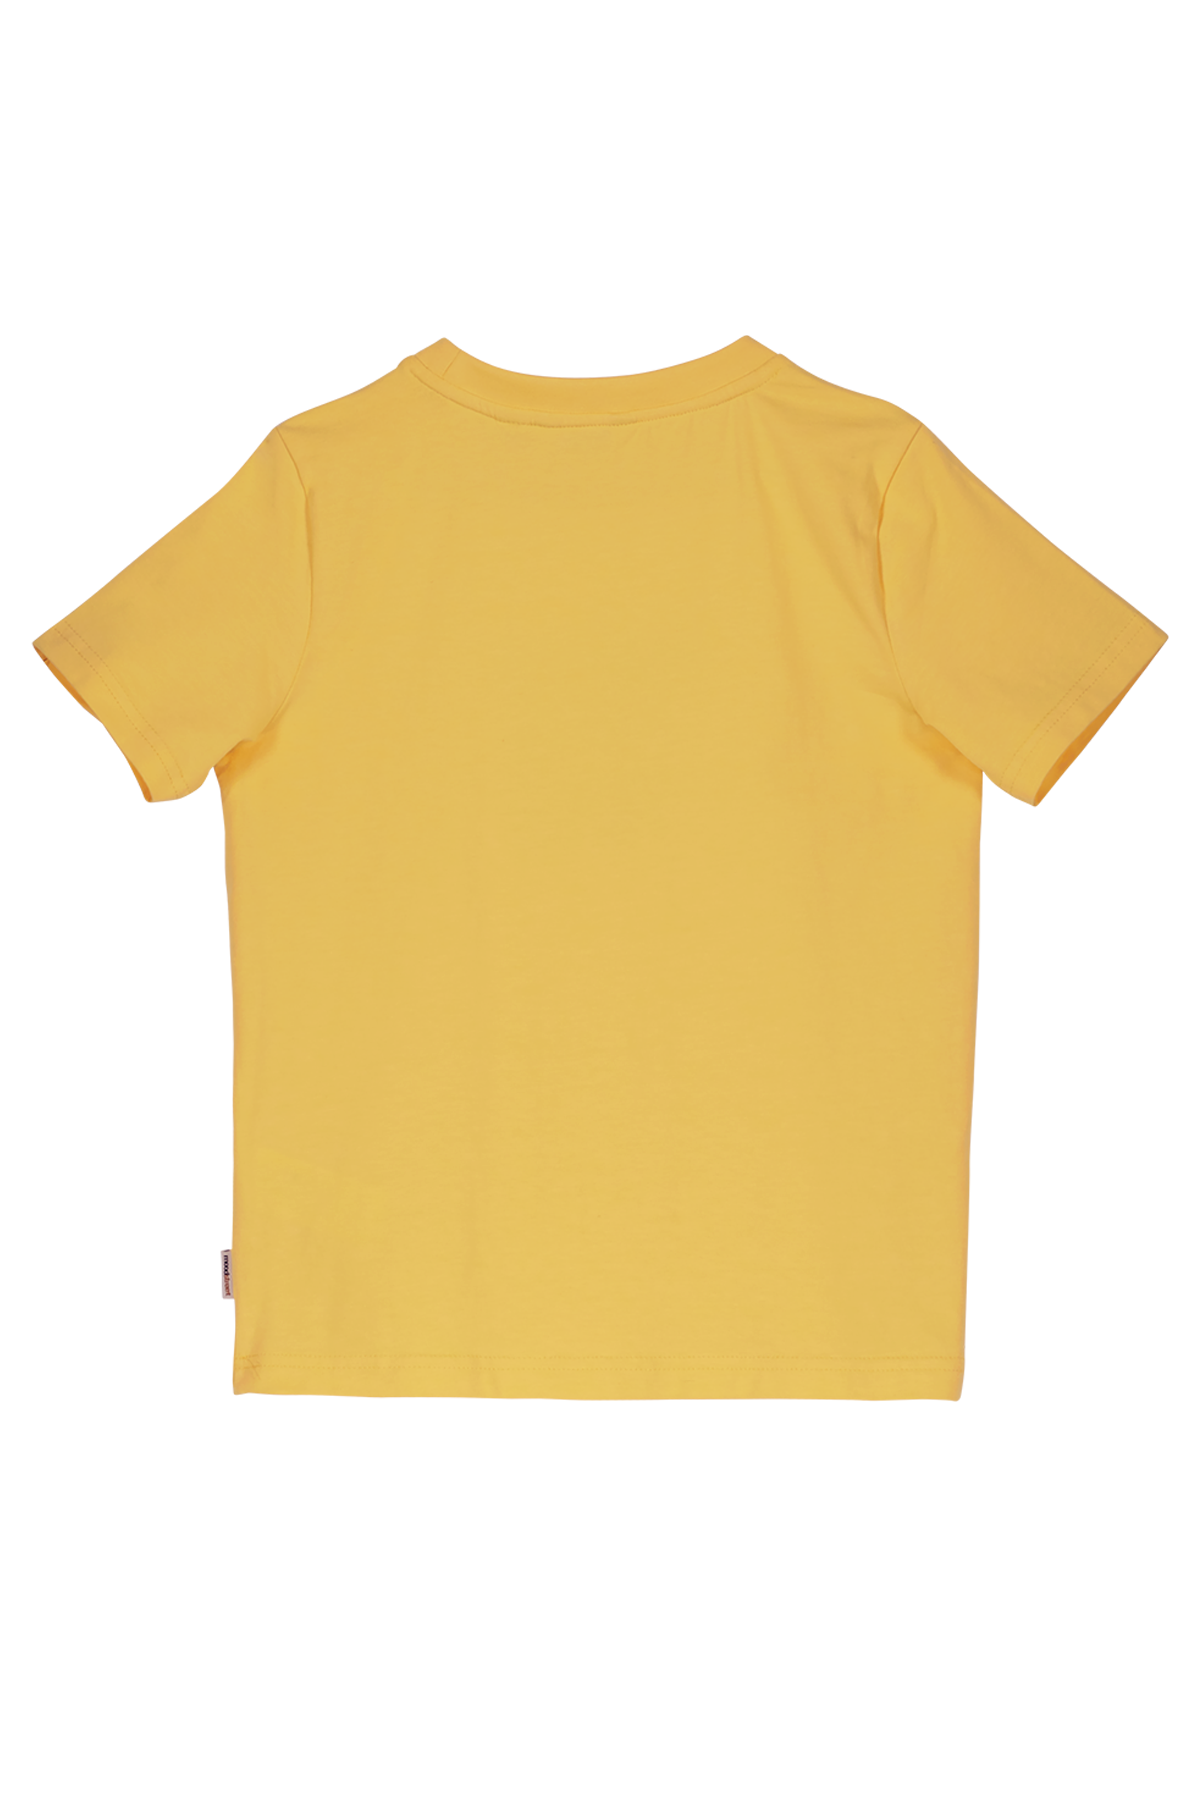 T-Shirt Boys t-shirt sunshine